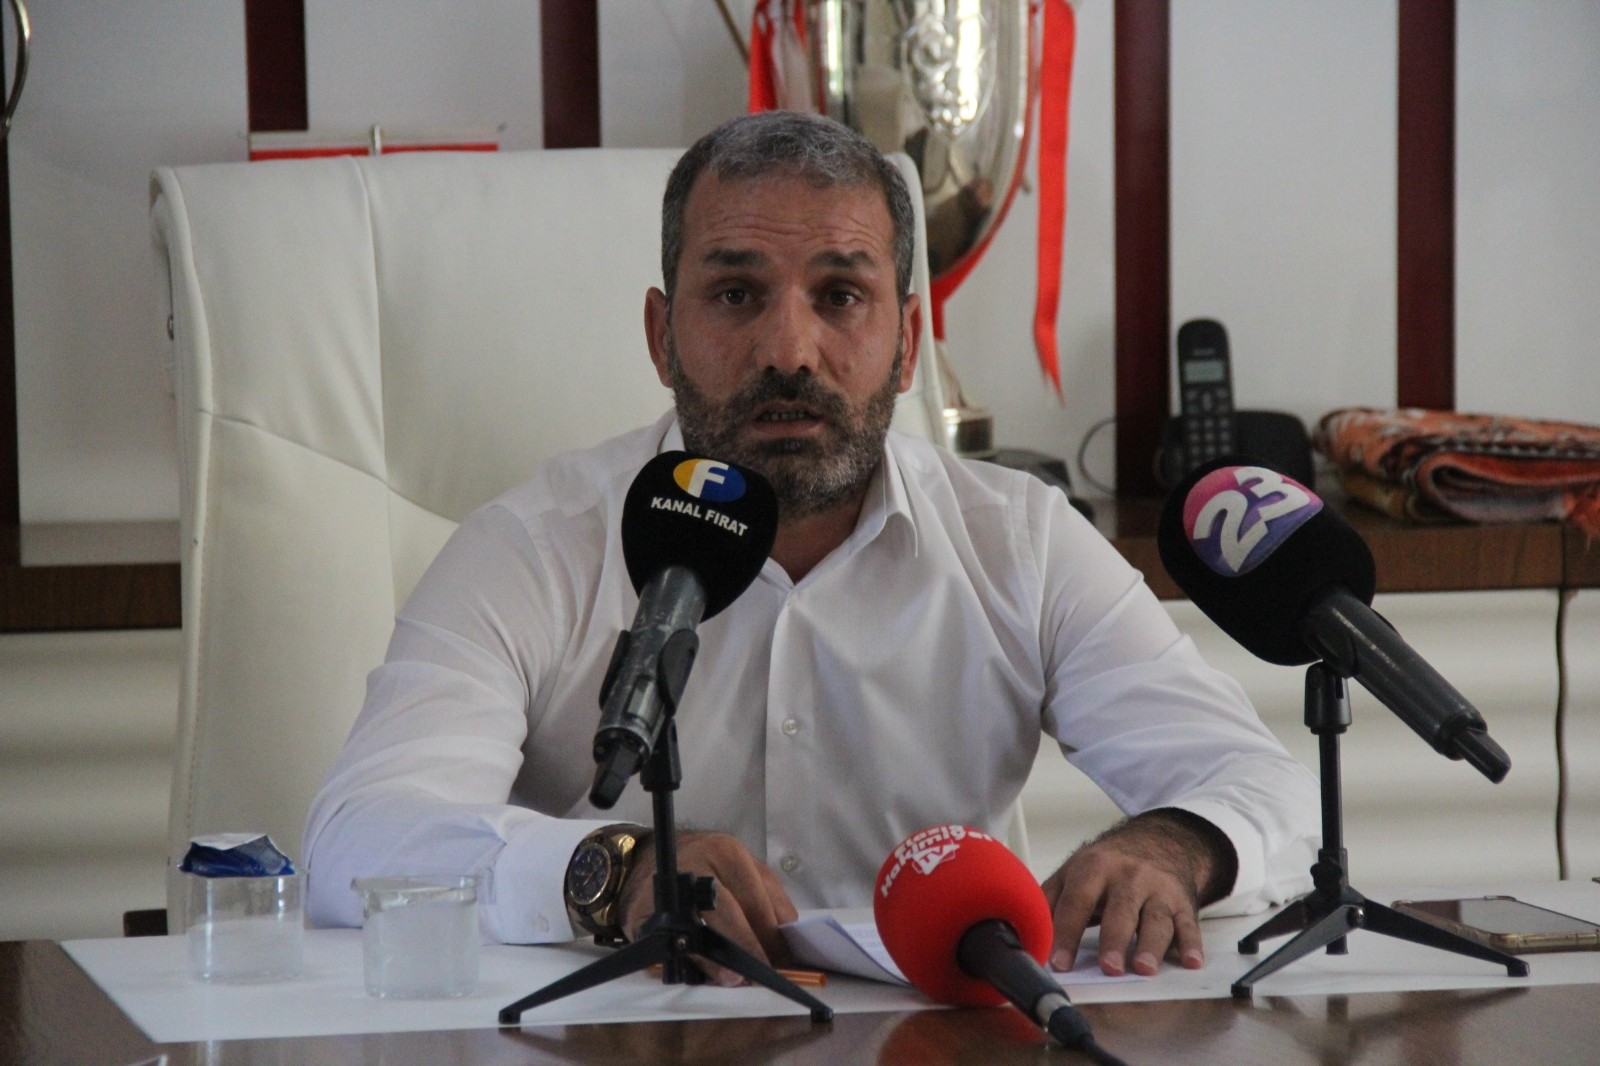 Elazığspor Başkanı Çayır: Gerekirse tüm borcu üstüme alırım, kafama sıkarım yine de kulübü kapattırmam